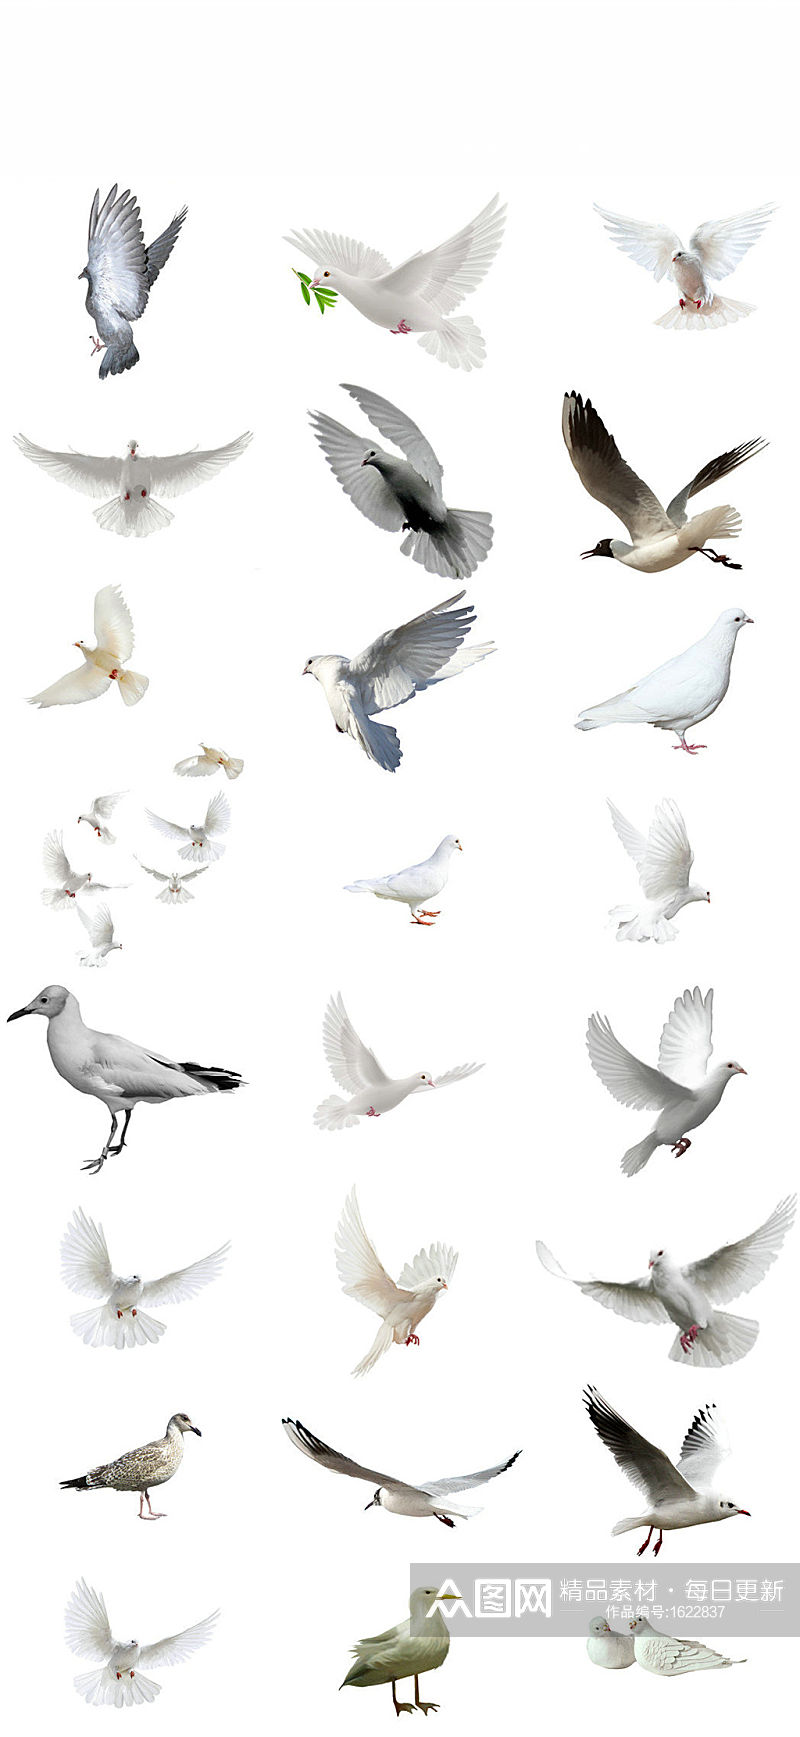 和平鸽子素材和平白鸽素材和平鸽子群素材